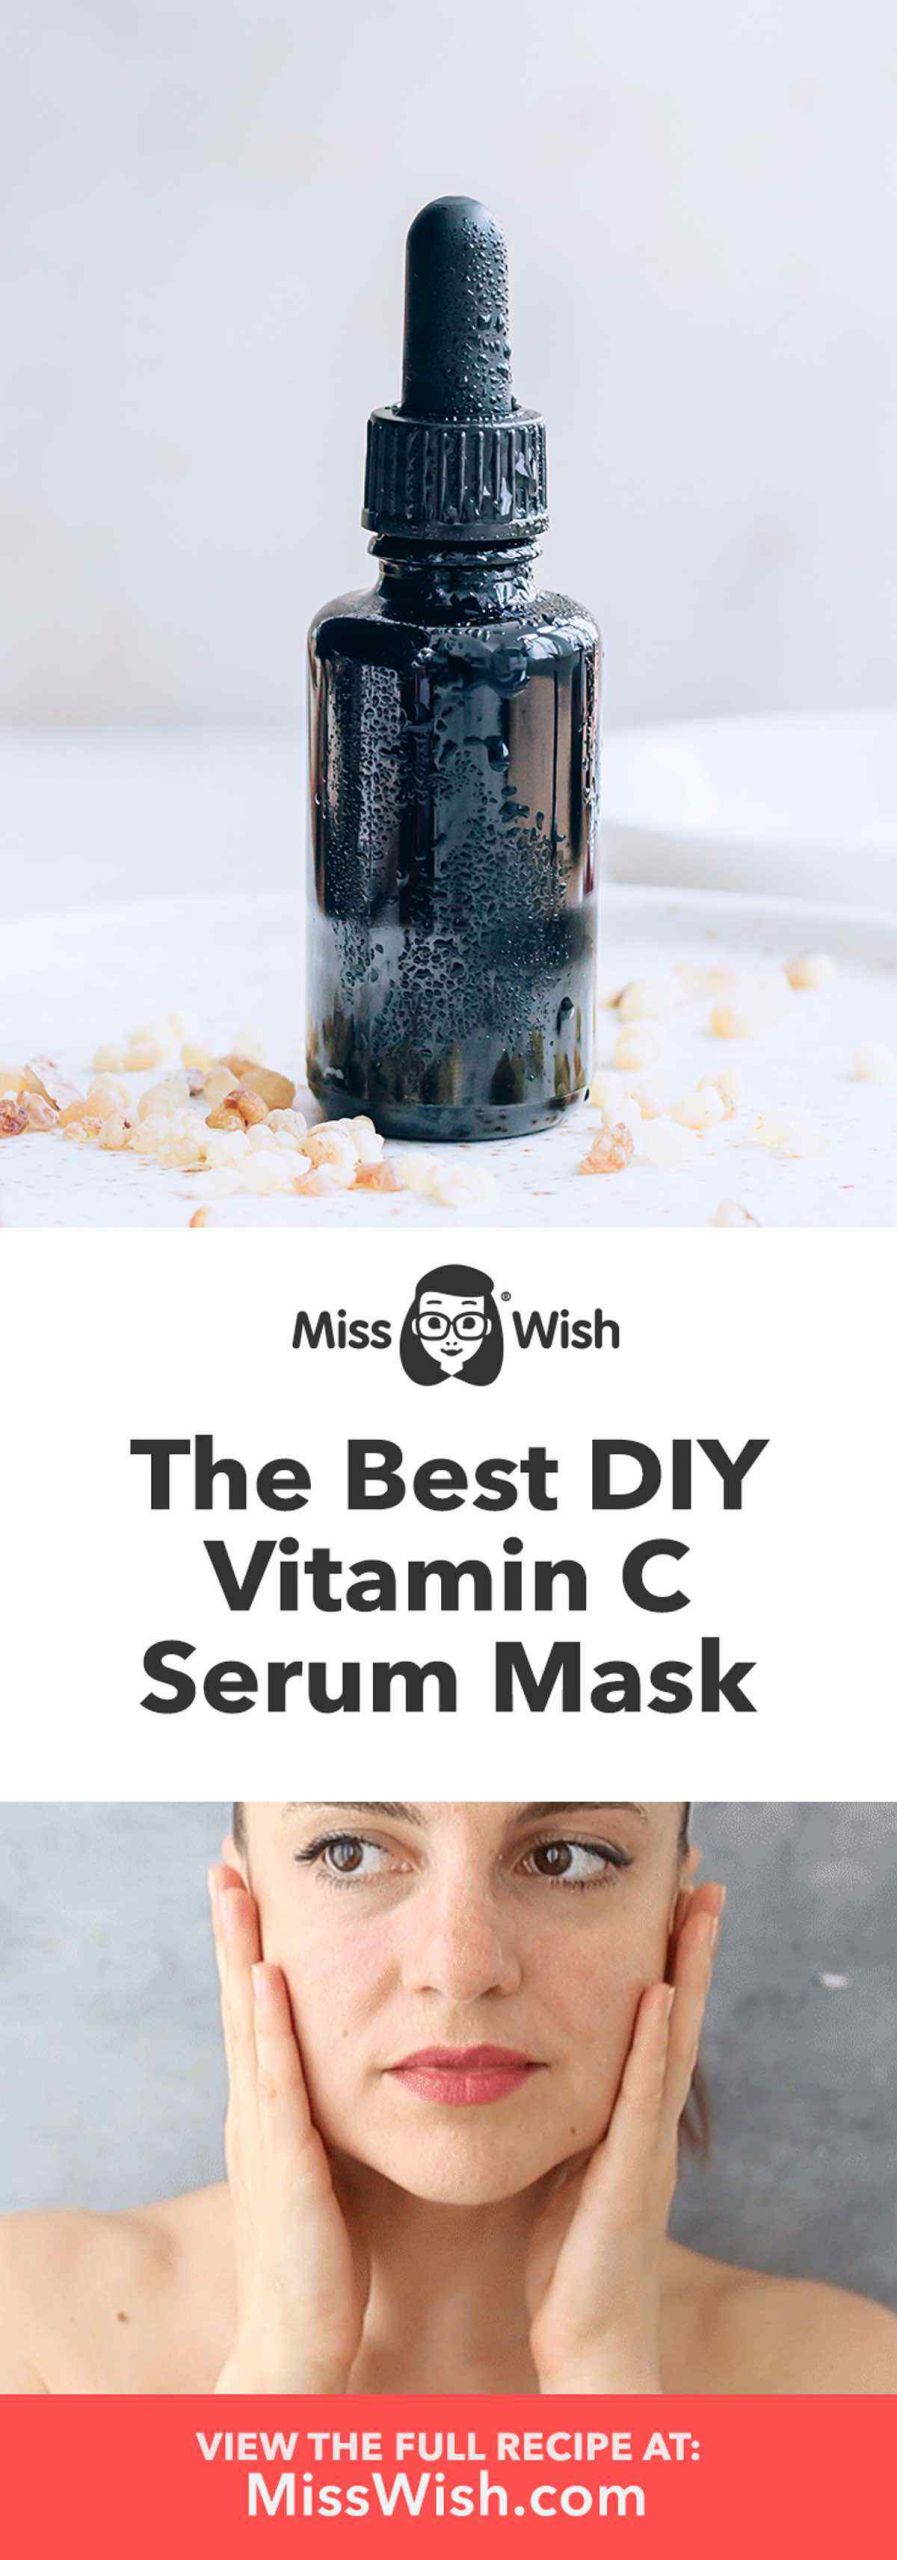 DIY Vitamin C Mask
 DIY Vitamin C Serum Face Mask Recipe for Increased